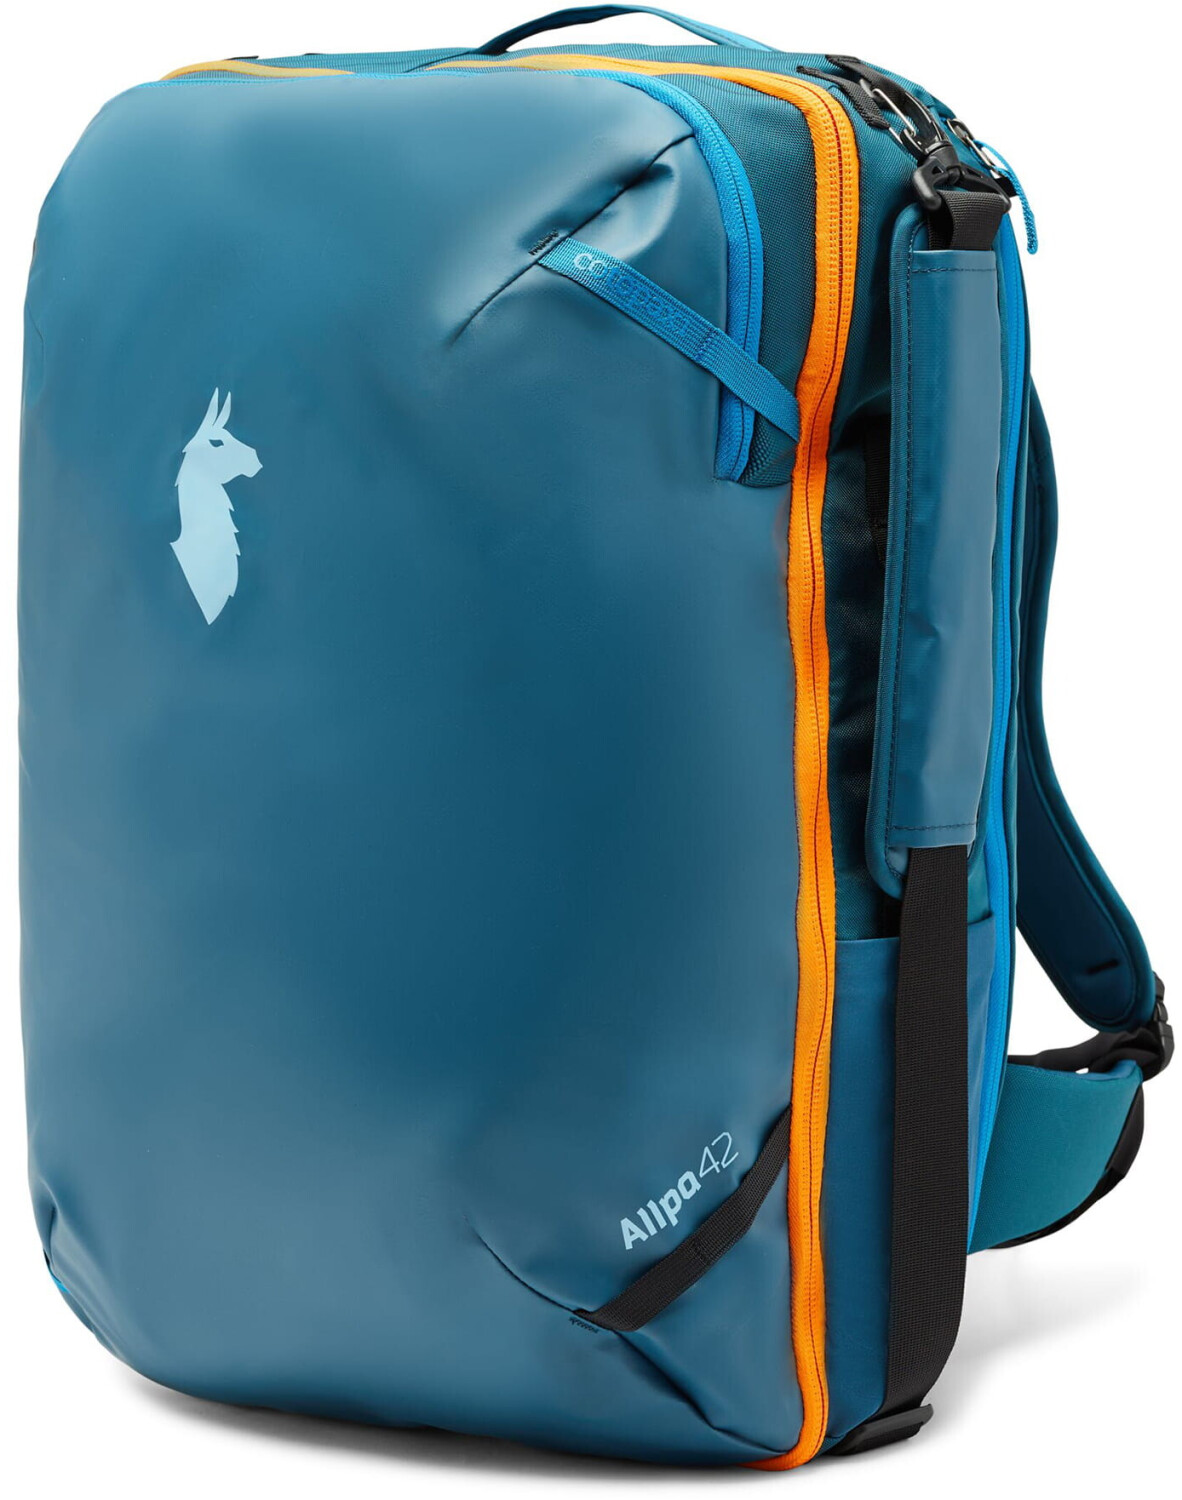 Photos - Backpack Cotopaxi Cotopaxi Allpa 42L Travel Pack indigo